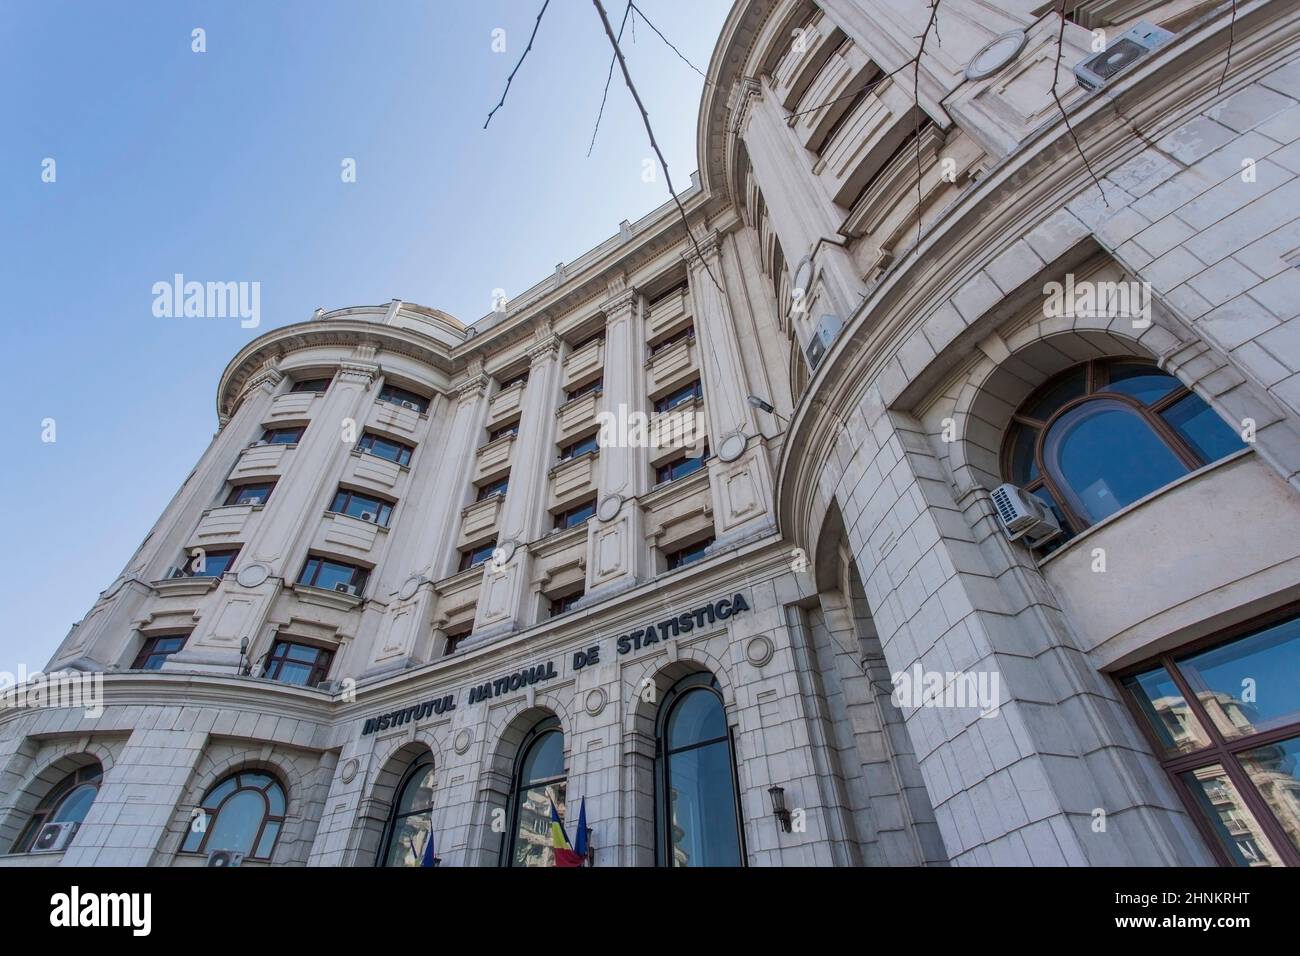 La construction statistique national à Bucarest, Roumanie Banque D'Images